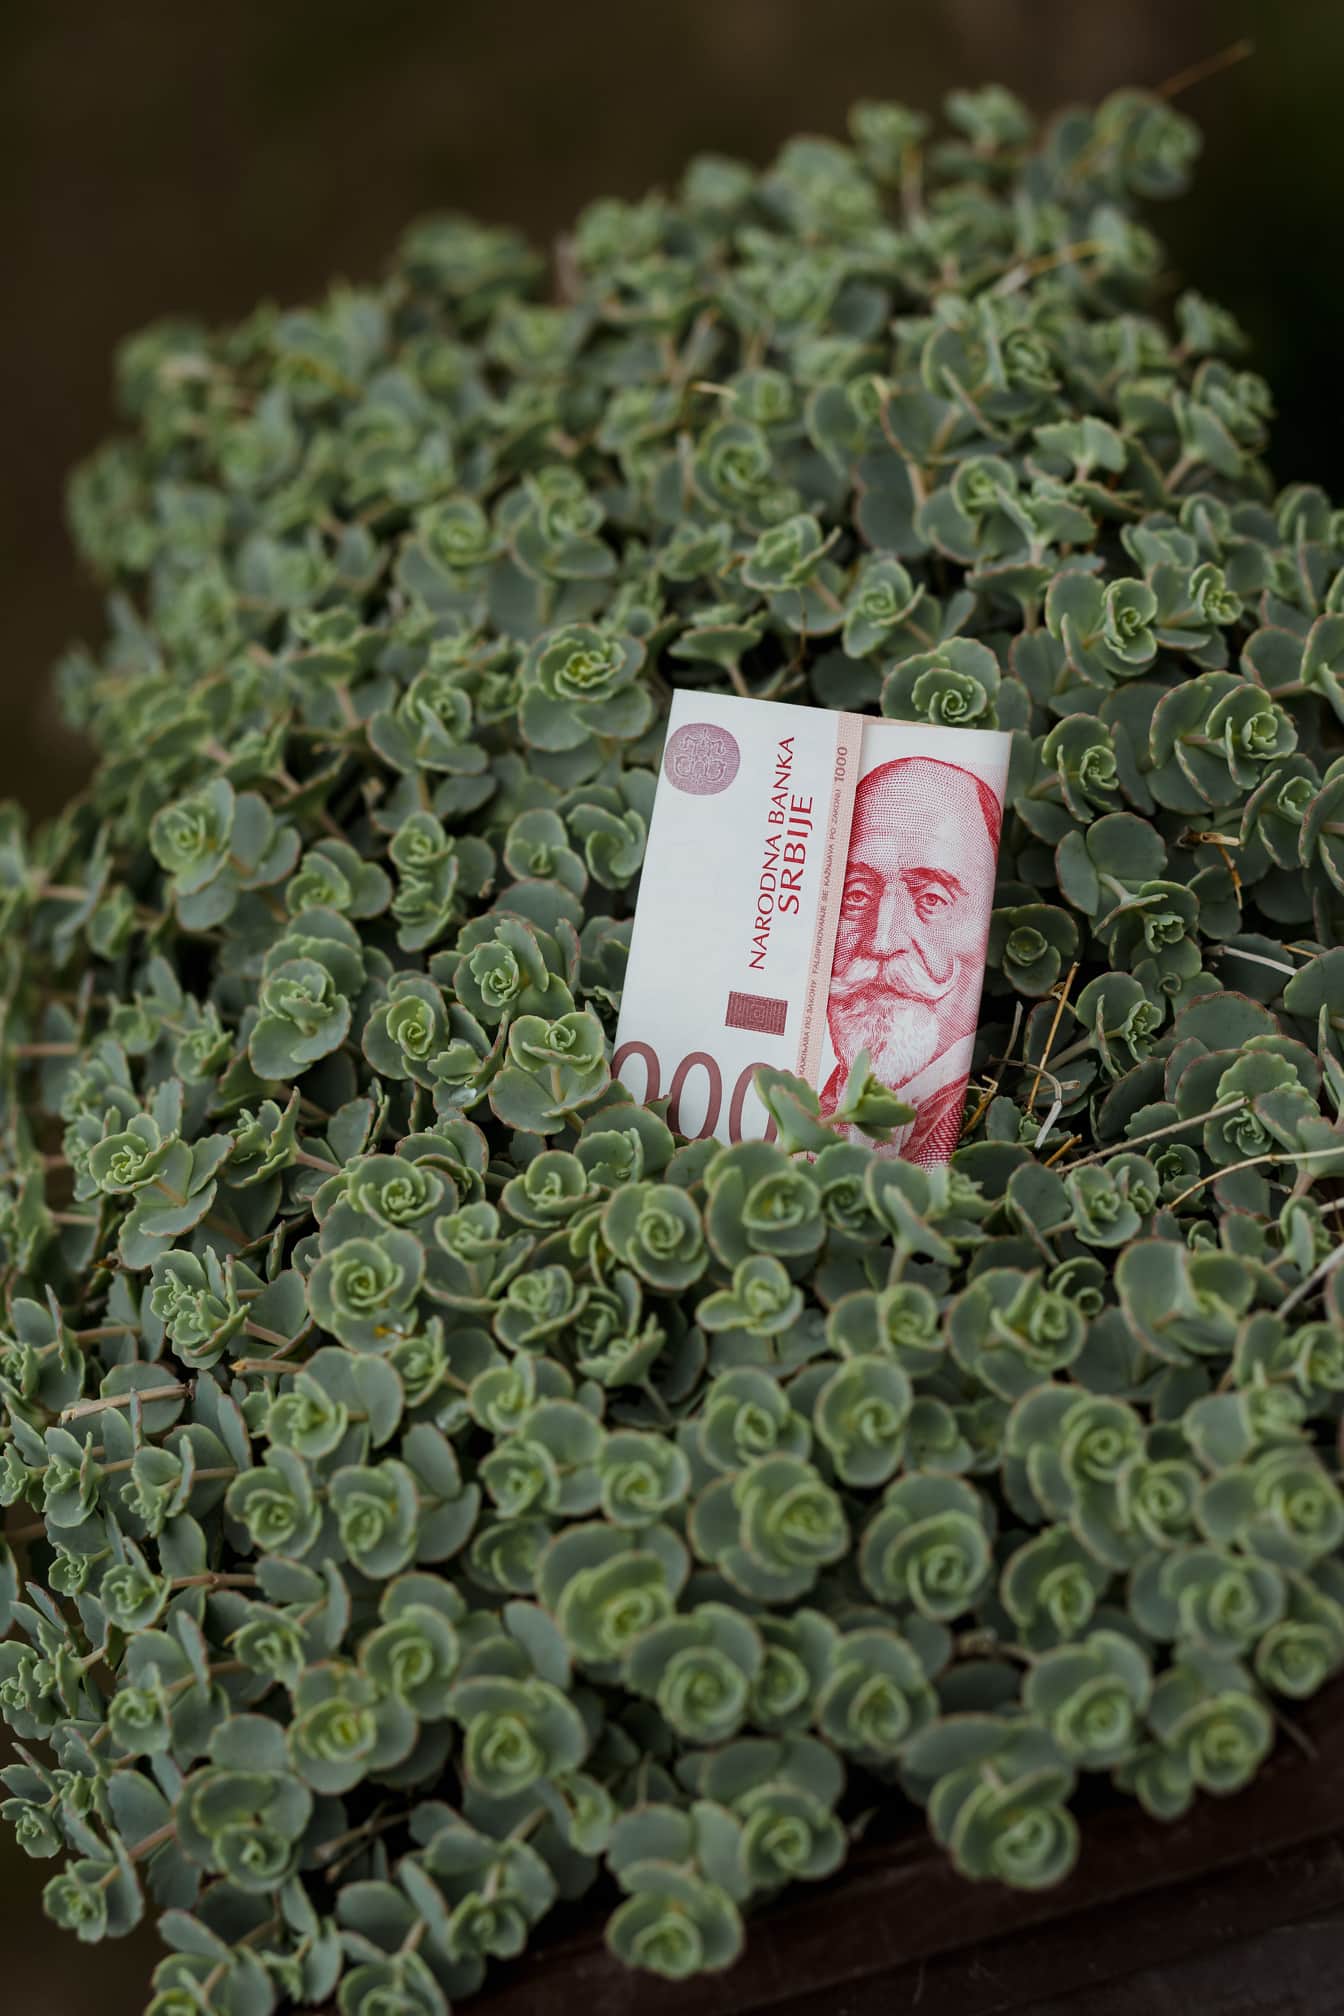 1000 Servische dinars van nationale bank van Servië op groene bladeren